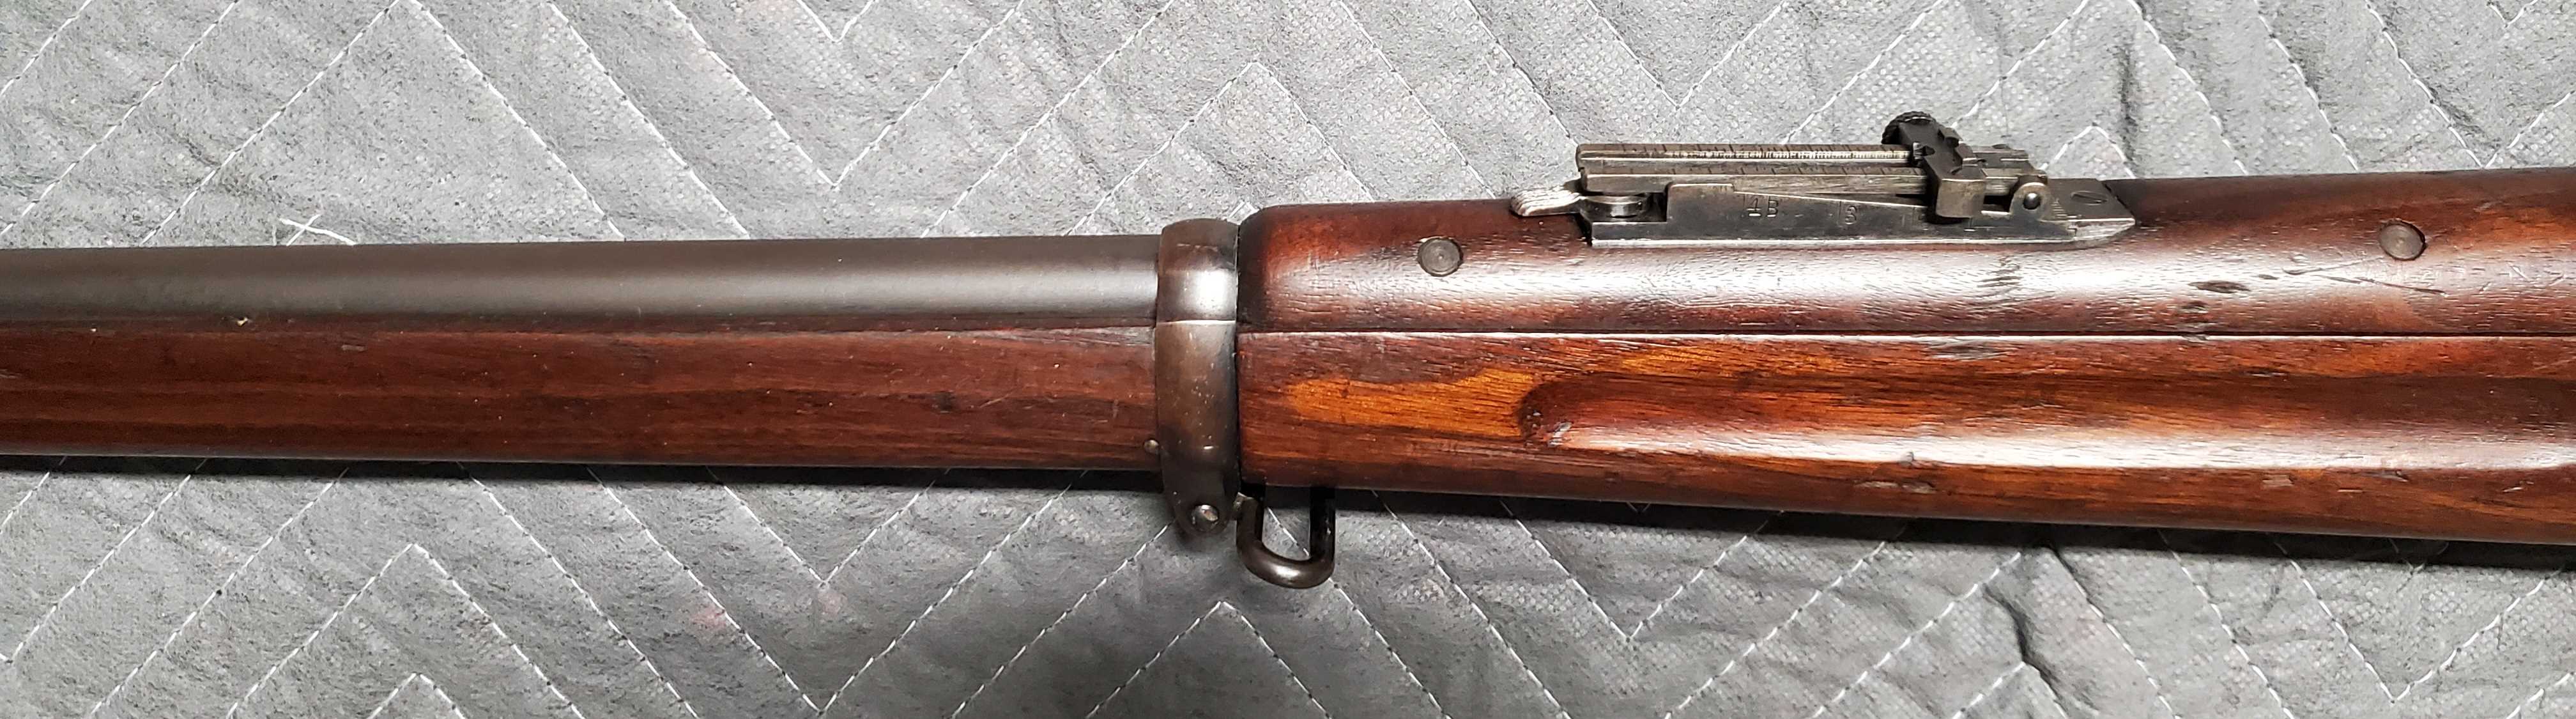 Krag Rifle9.jpg